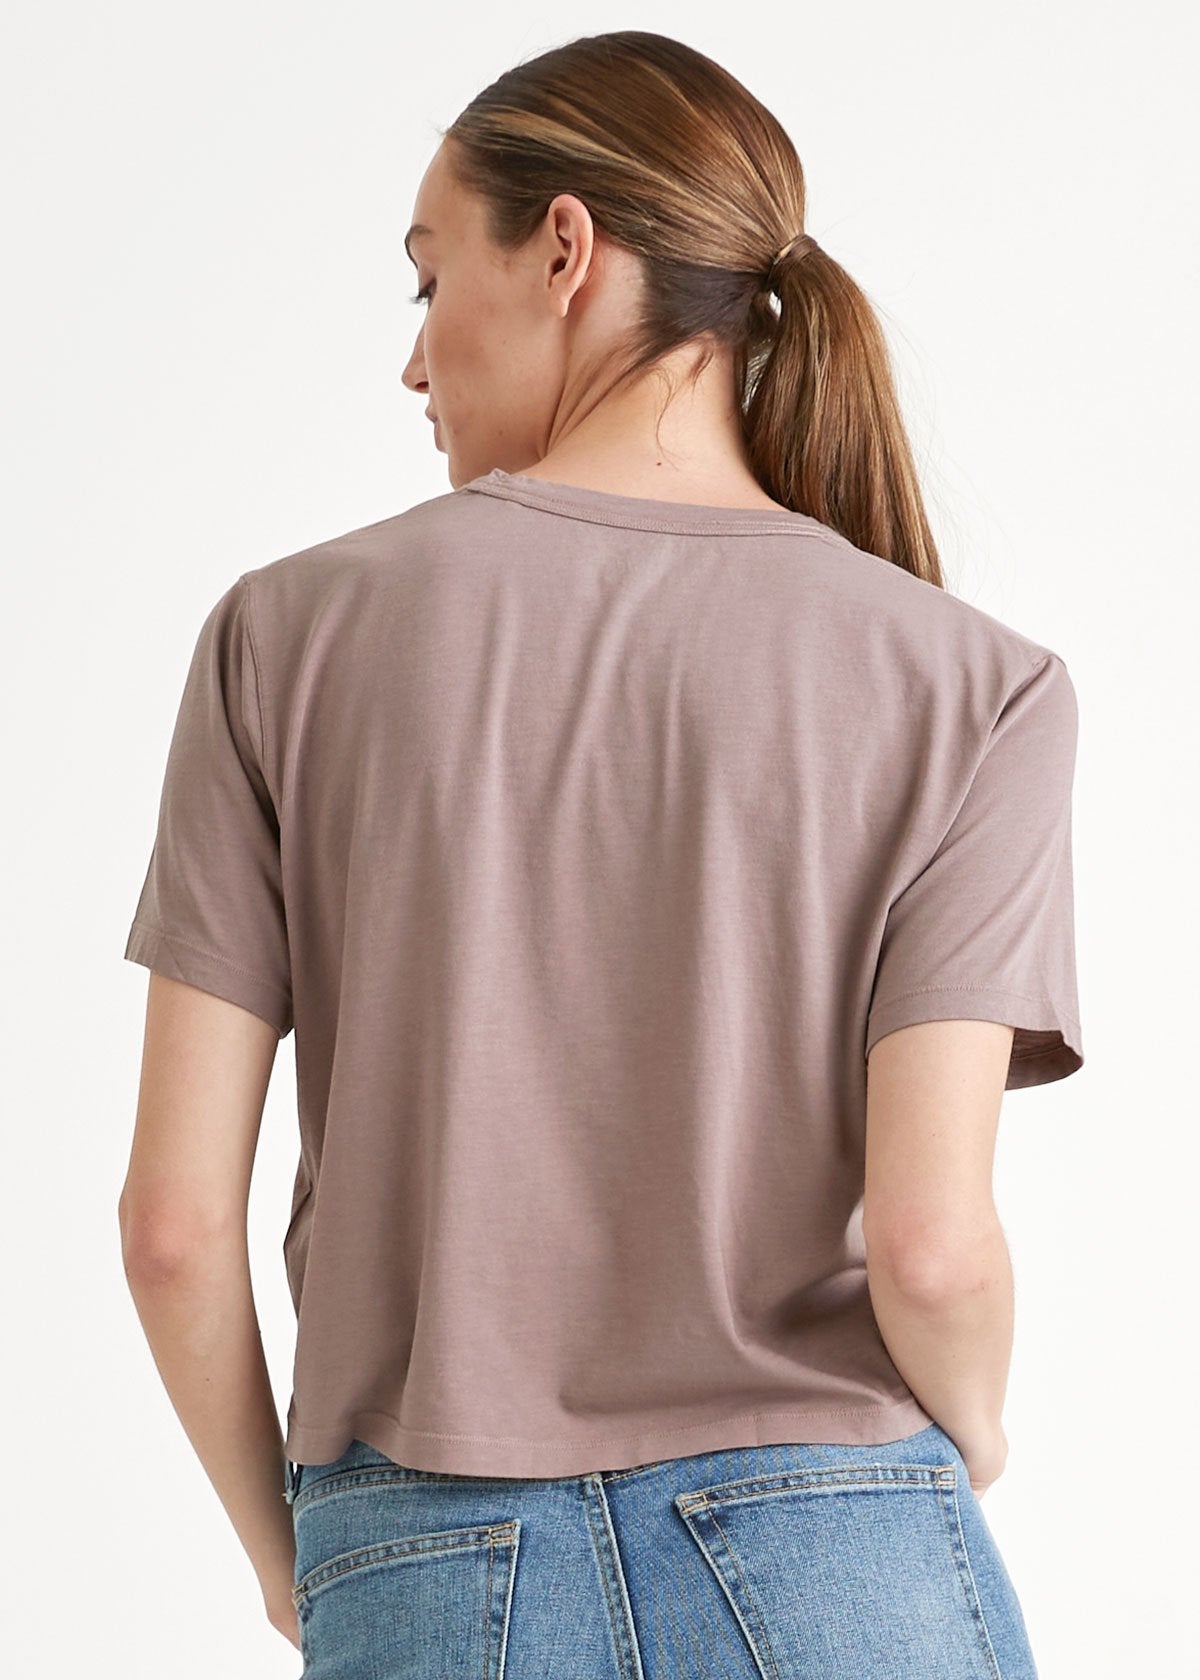 Women's light brown lightweight soft crop tshirt back